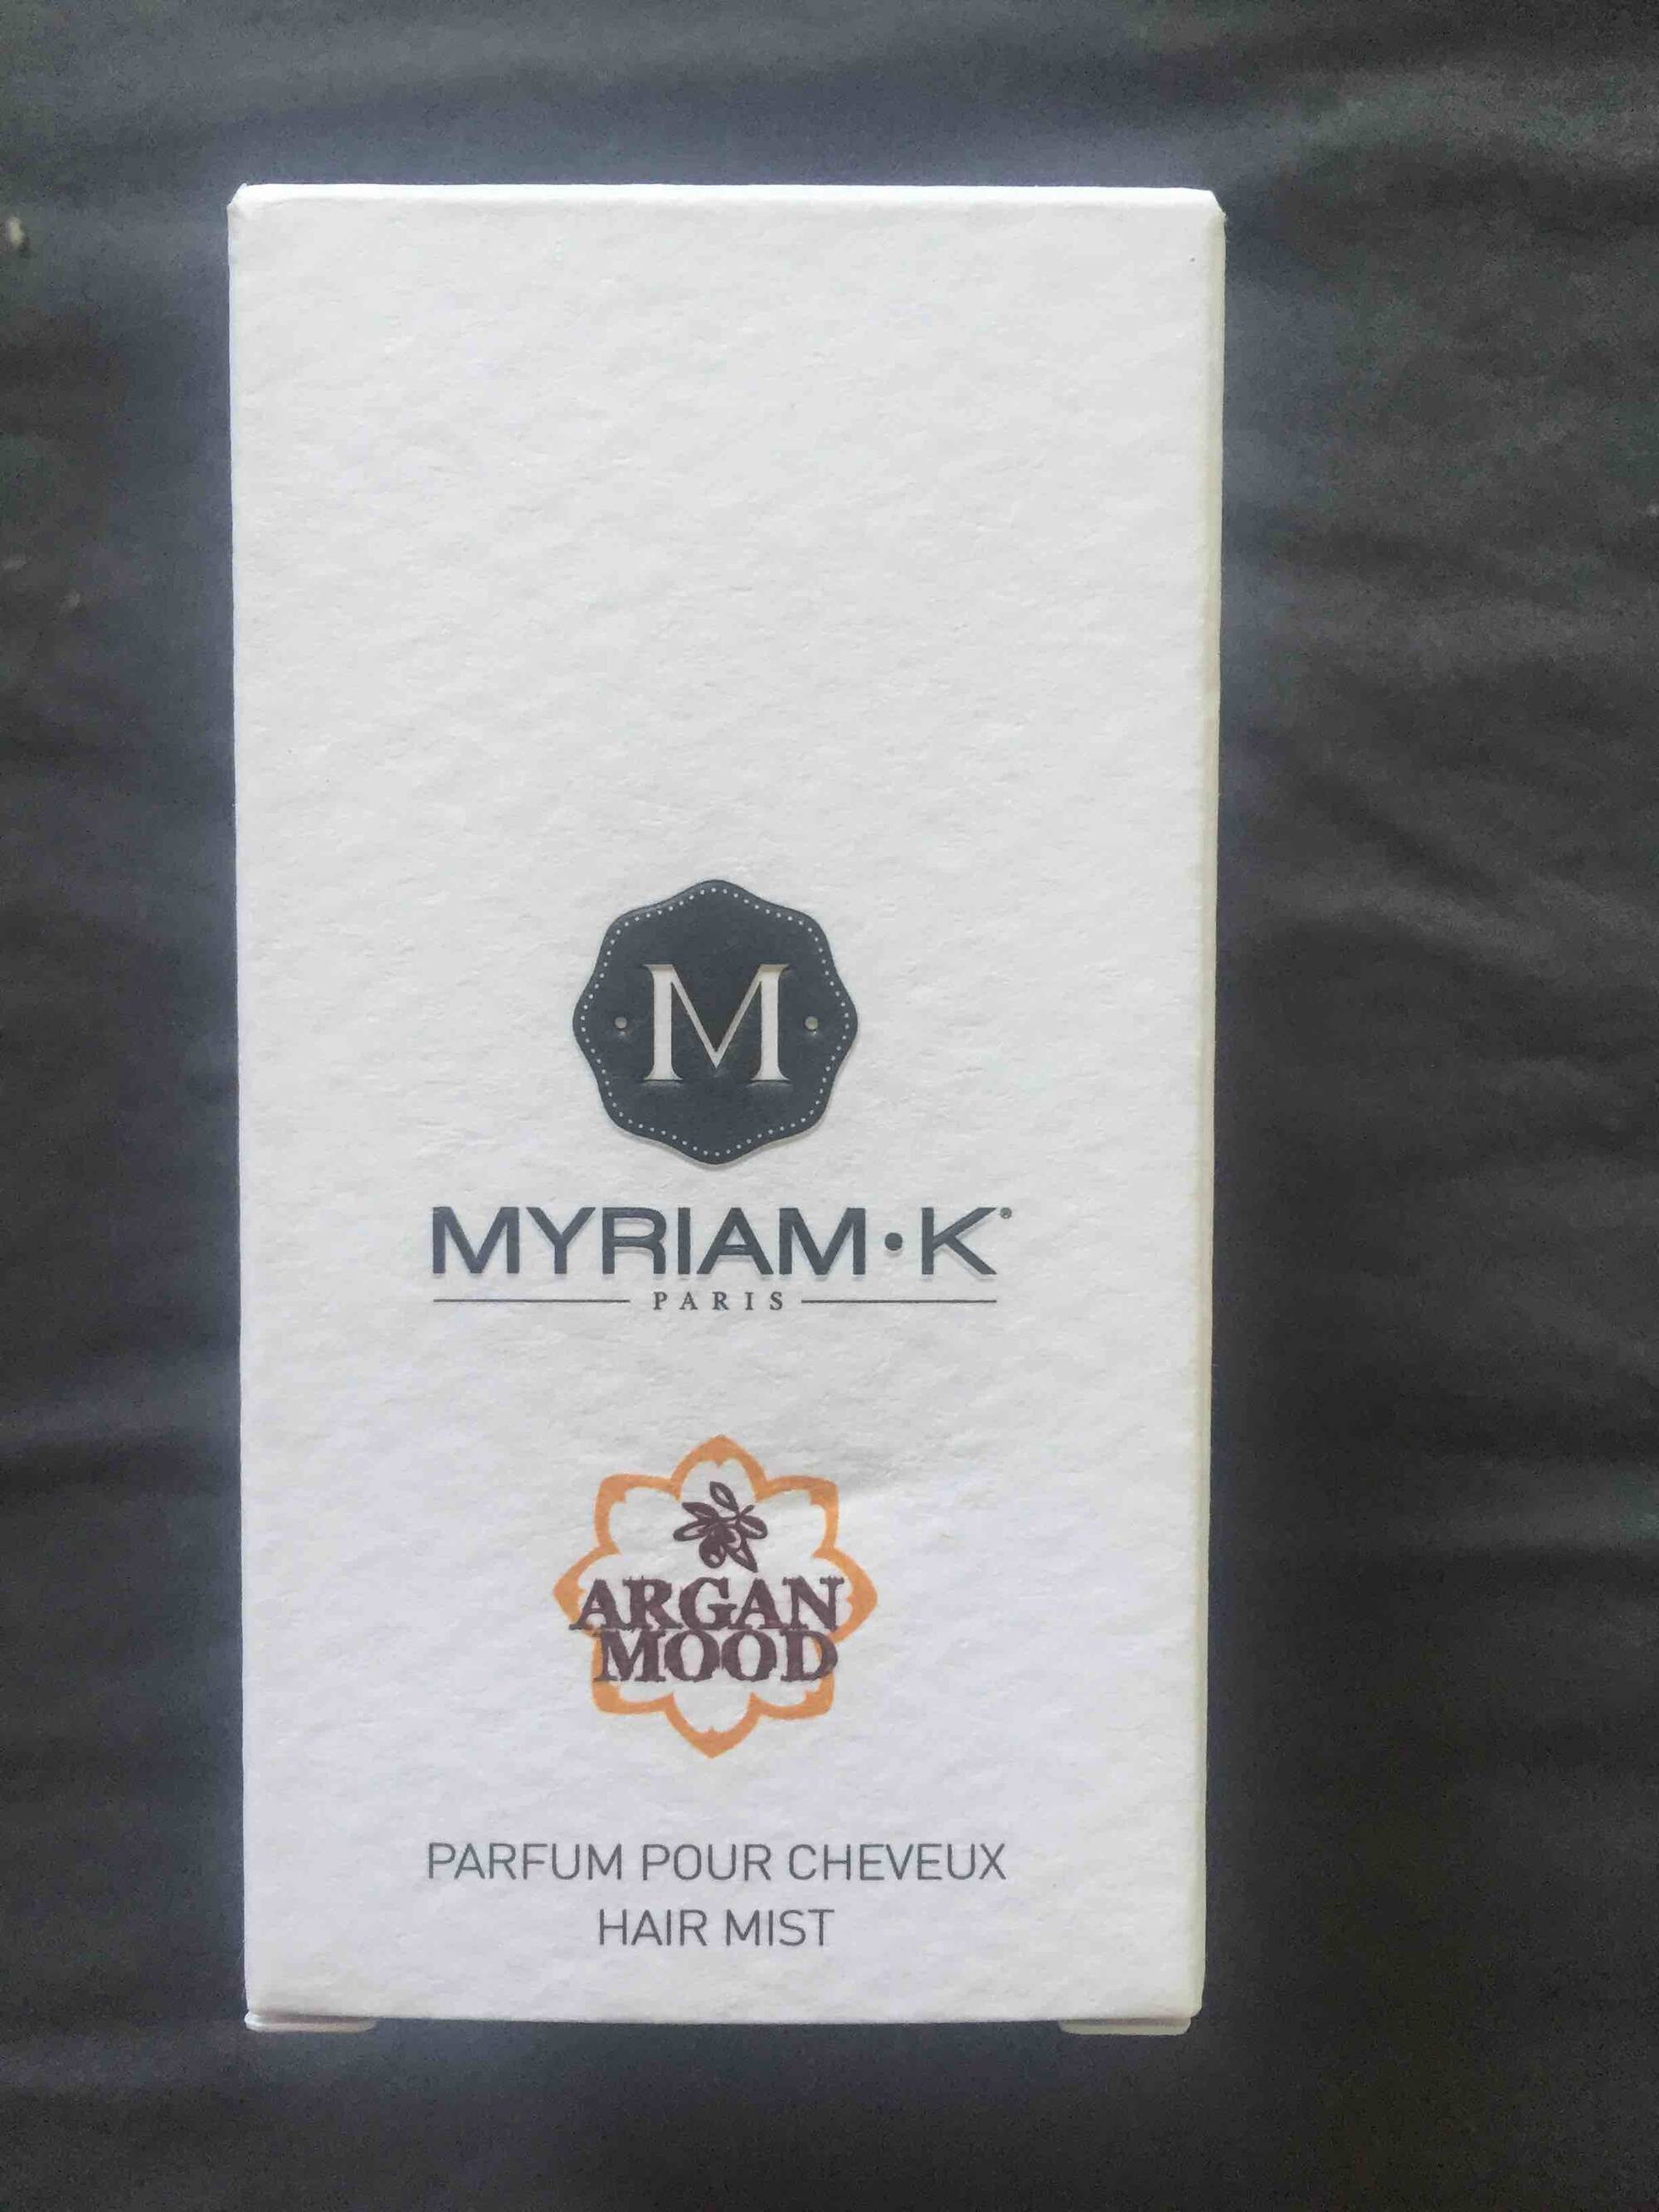 MYRIAM.K - Argan Mood - Parfum pour cheveux